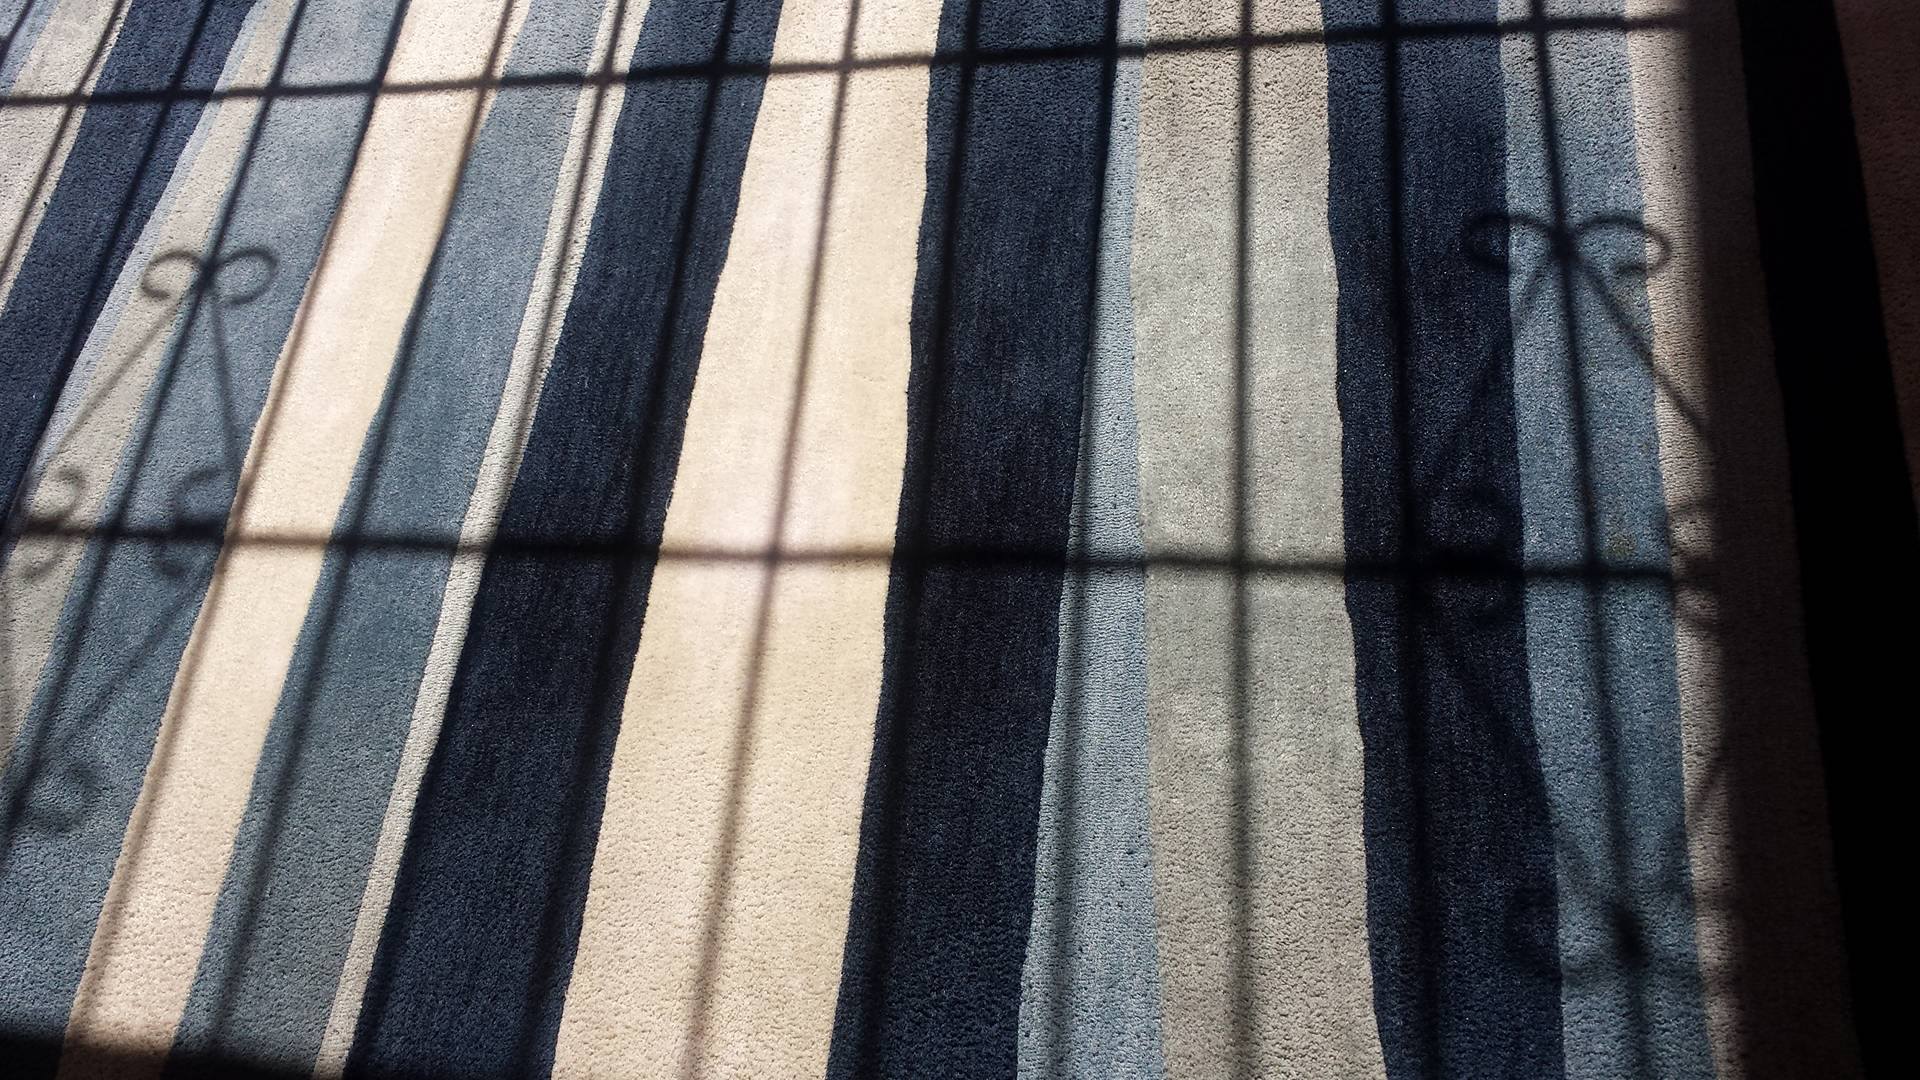 Lavado de alfombras a domicilio en santo domingo limpieza muebles vapor republica dominicana empresa servicios conserjeria brillado pisos pulido marmol fumigacion plagas control garrapatas tratamiento comejen